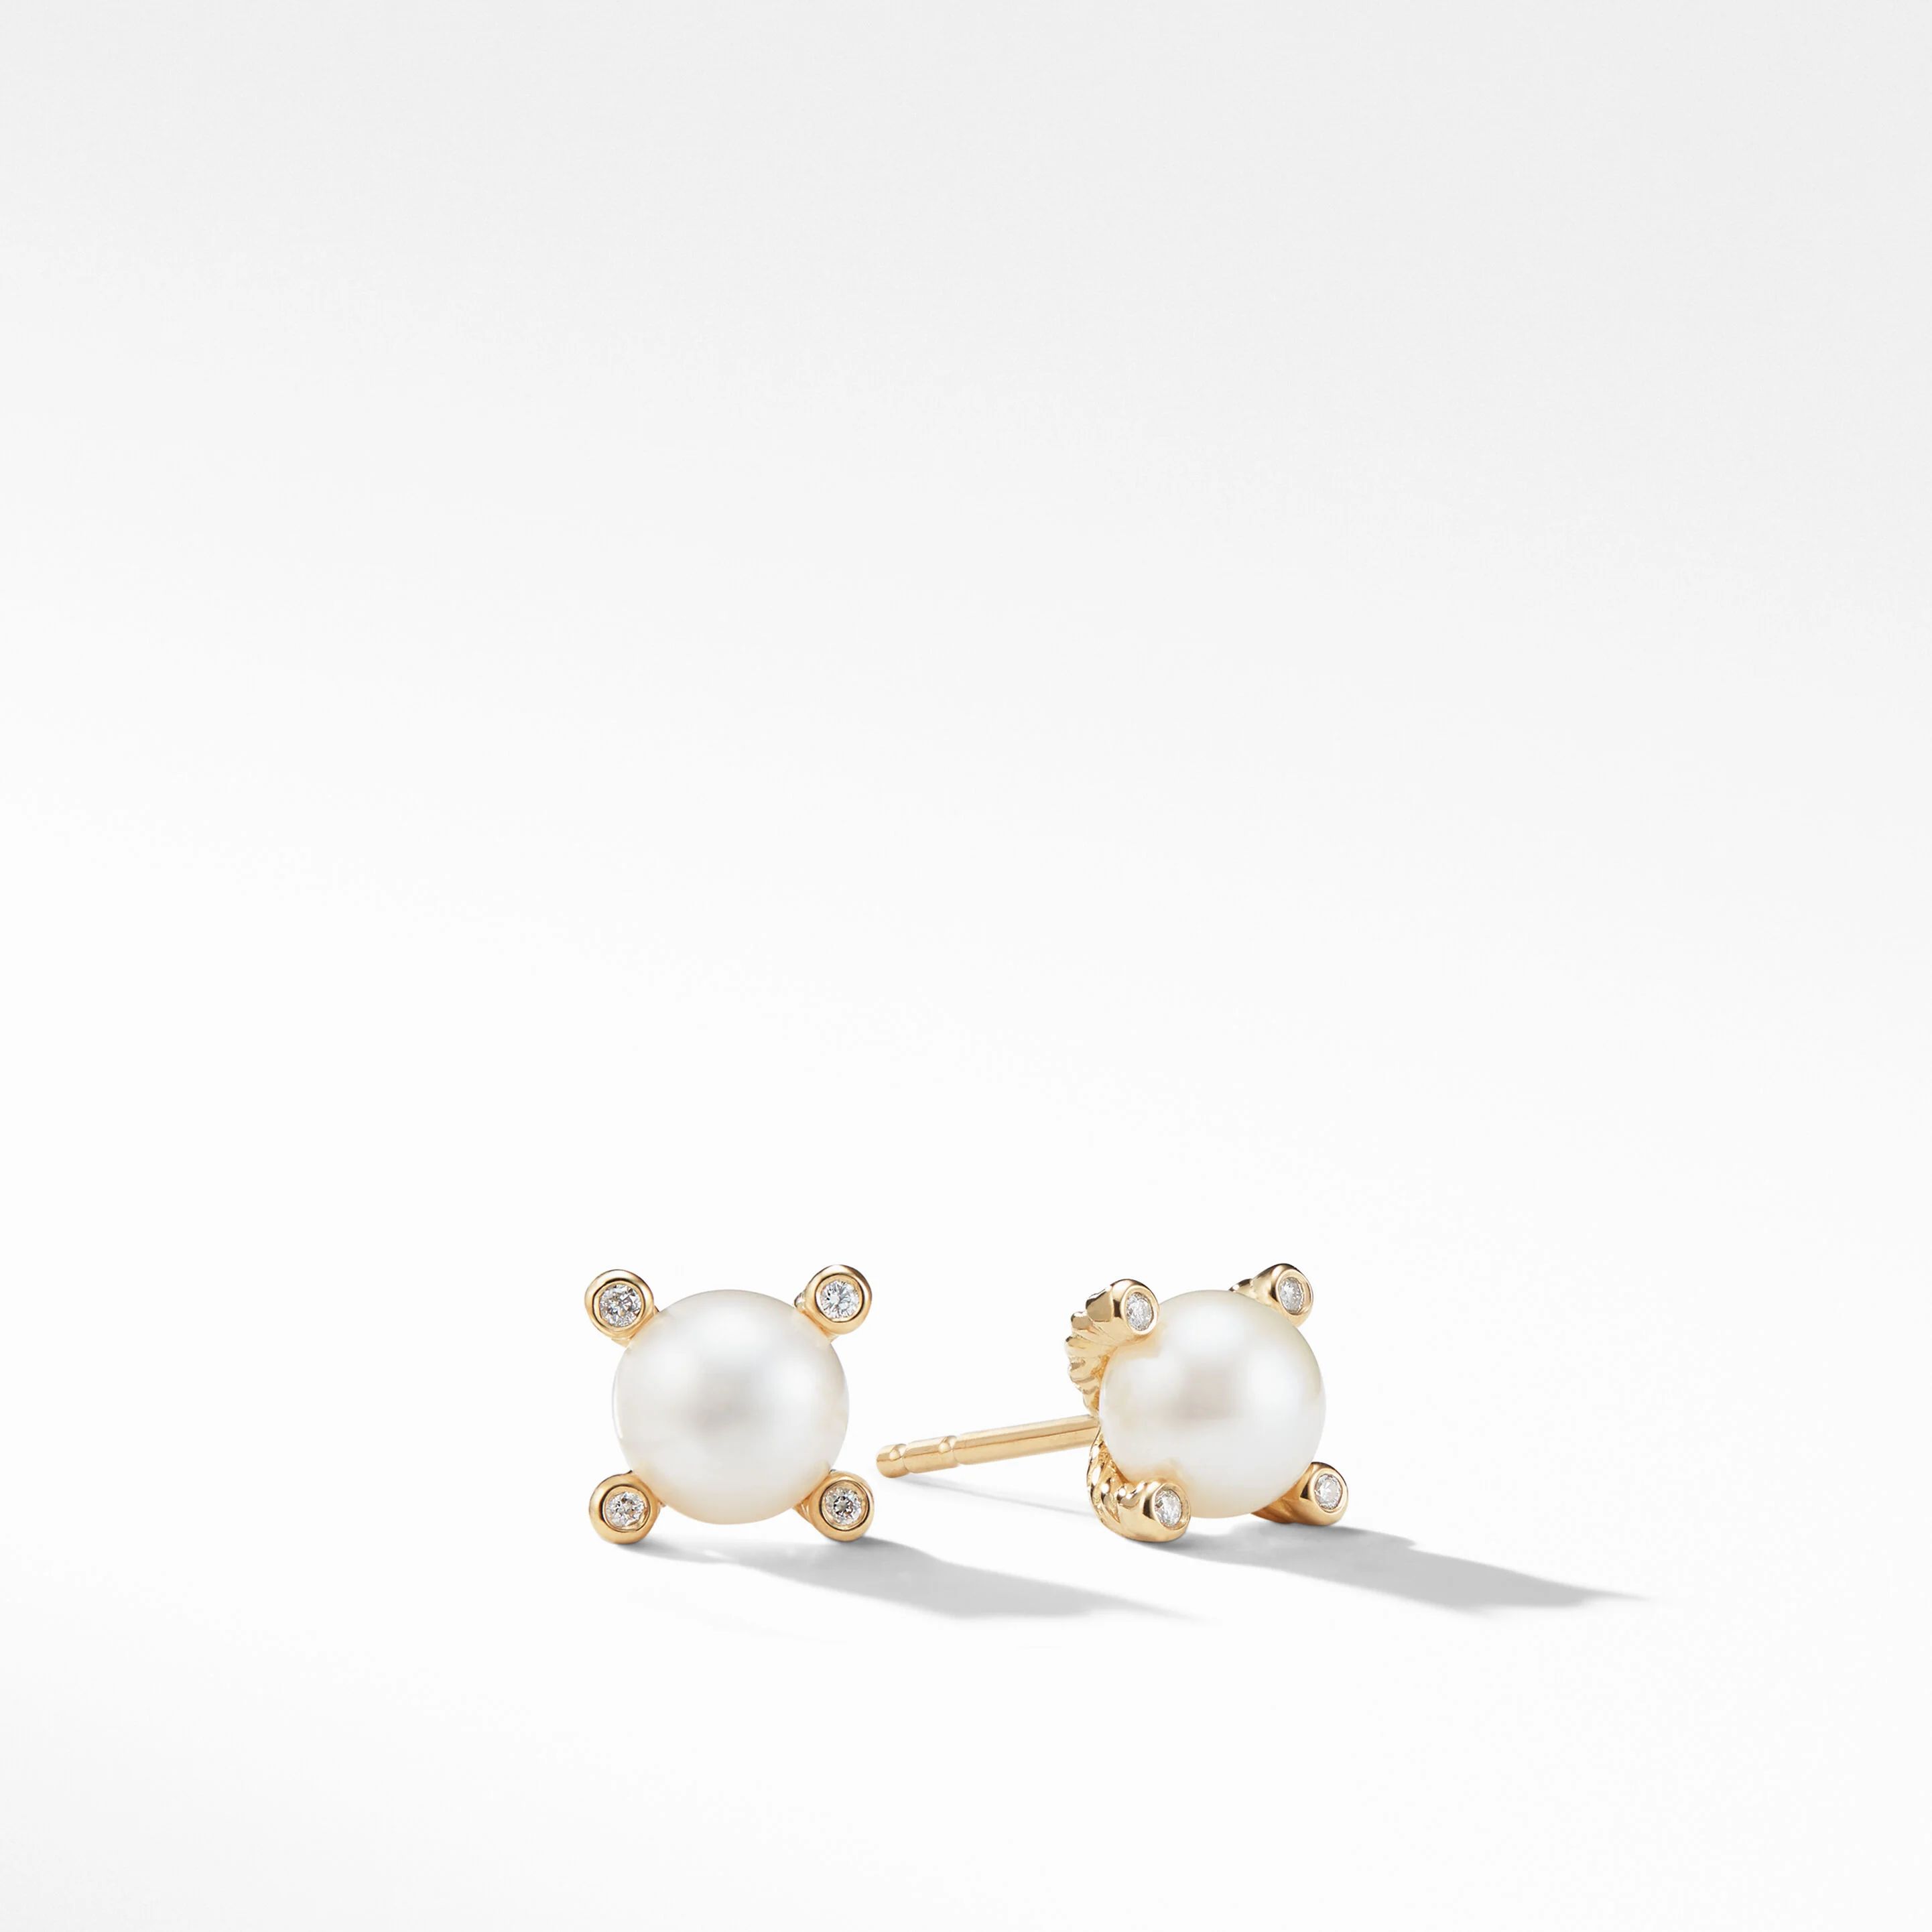 Cable Pearl Stud Earrings in 18K Yellow Gold with Diamonds | David Yurman